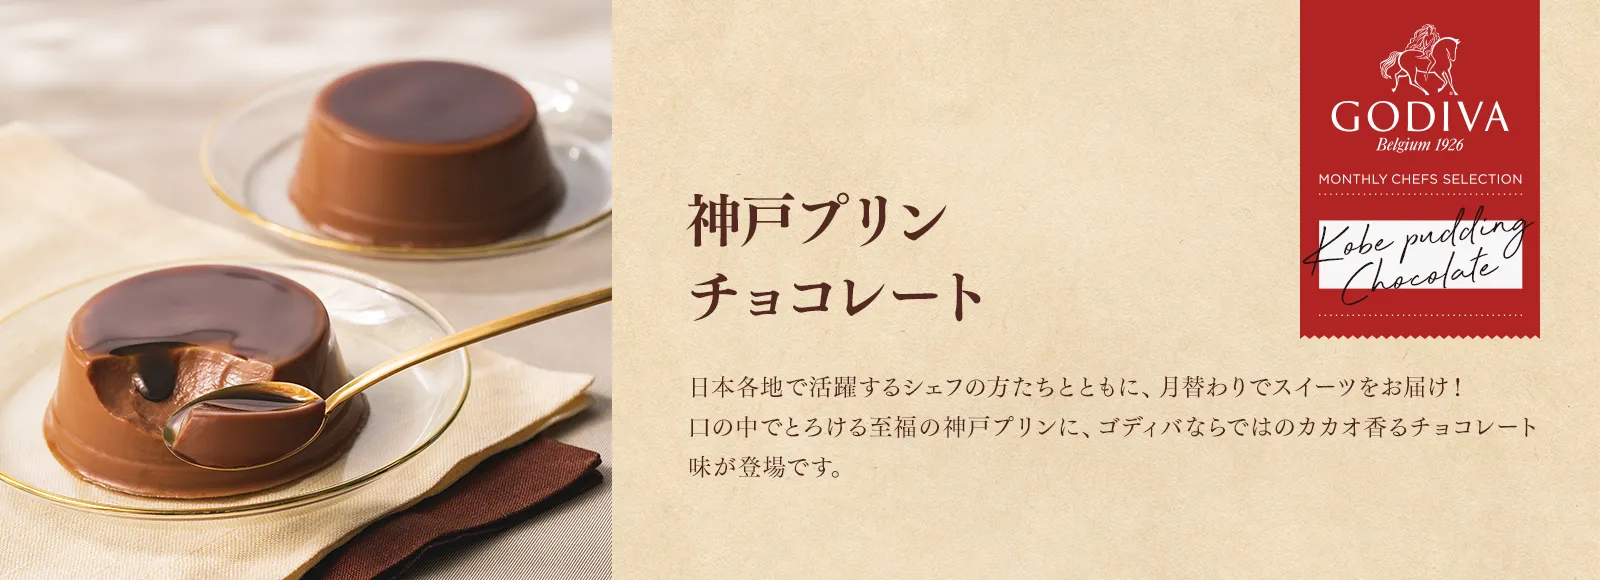 神戸プリン チョコレート